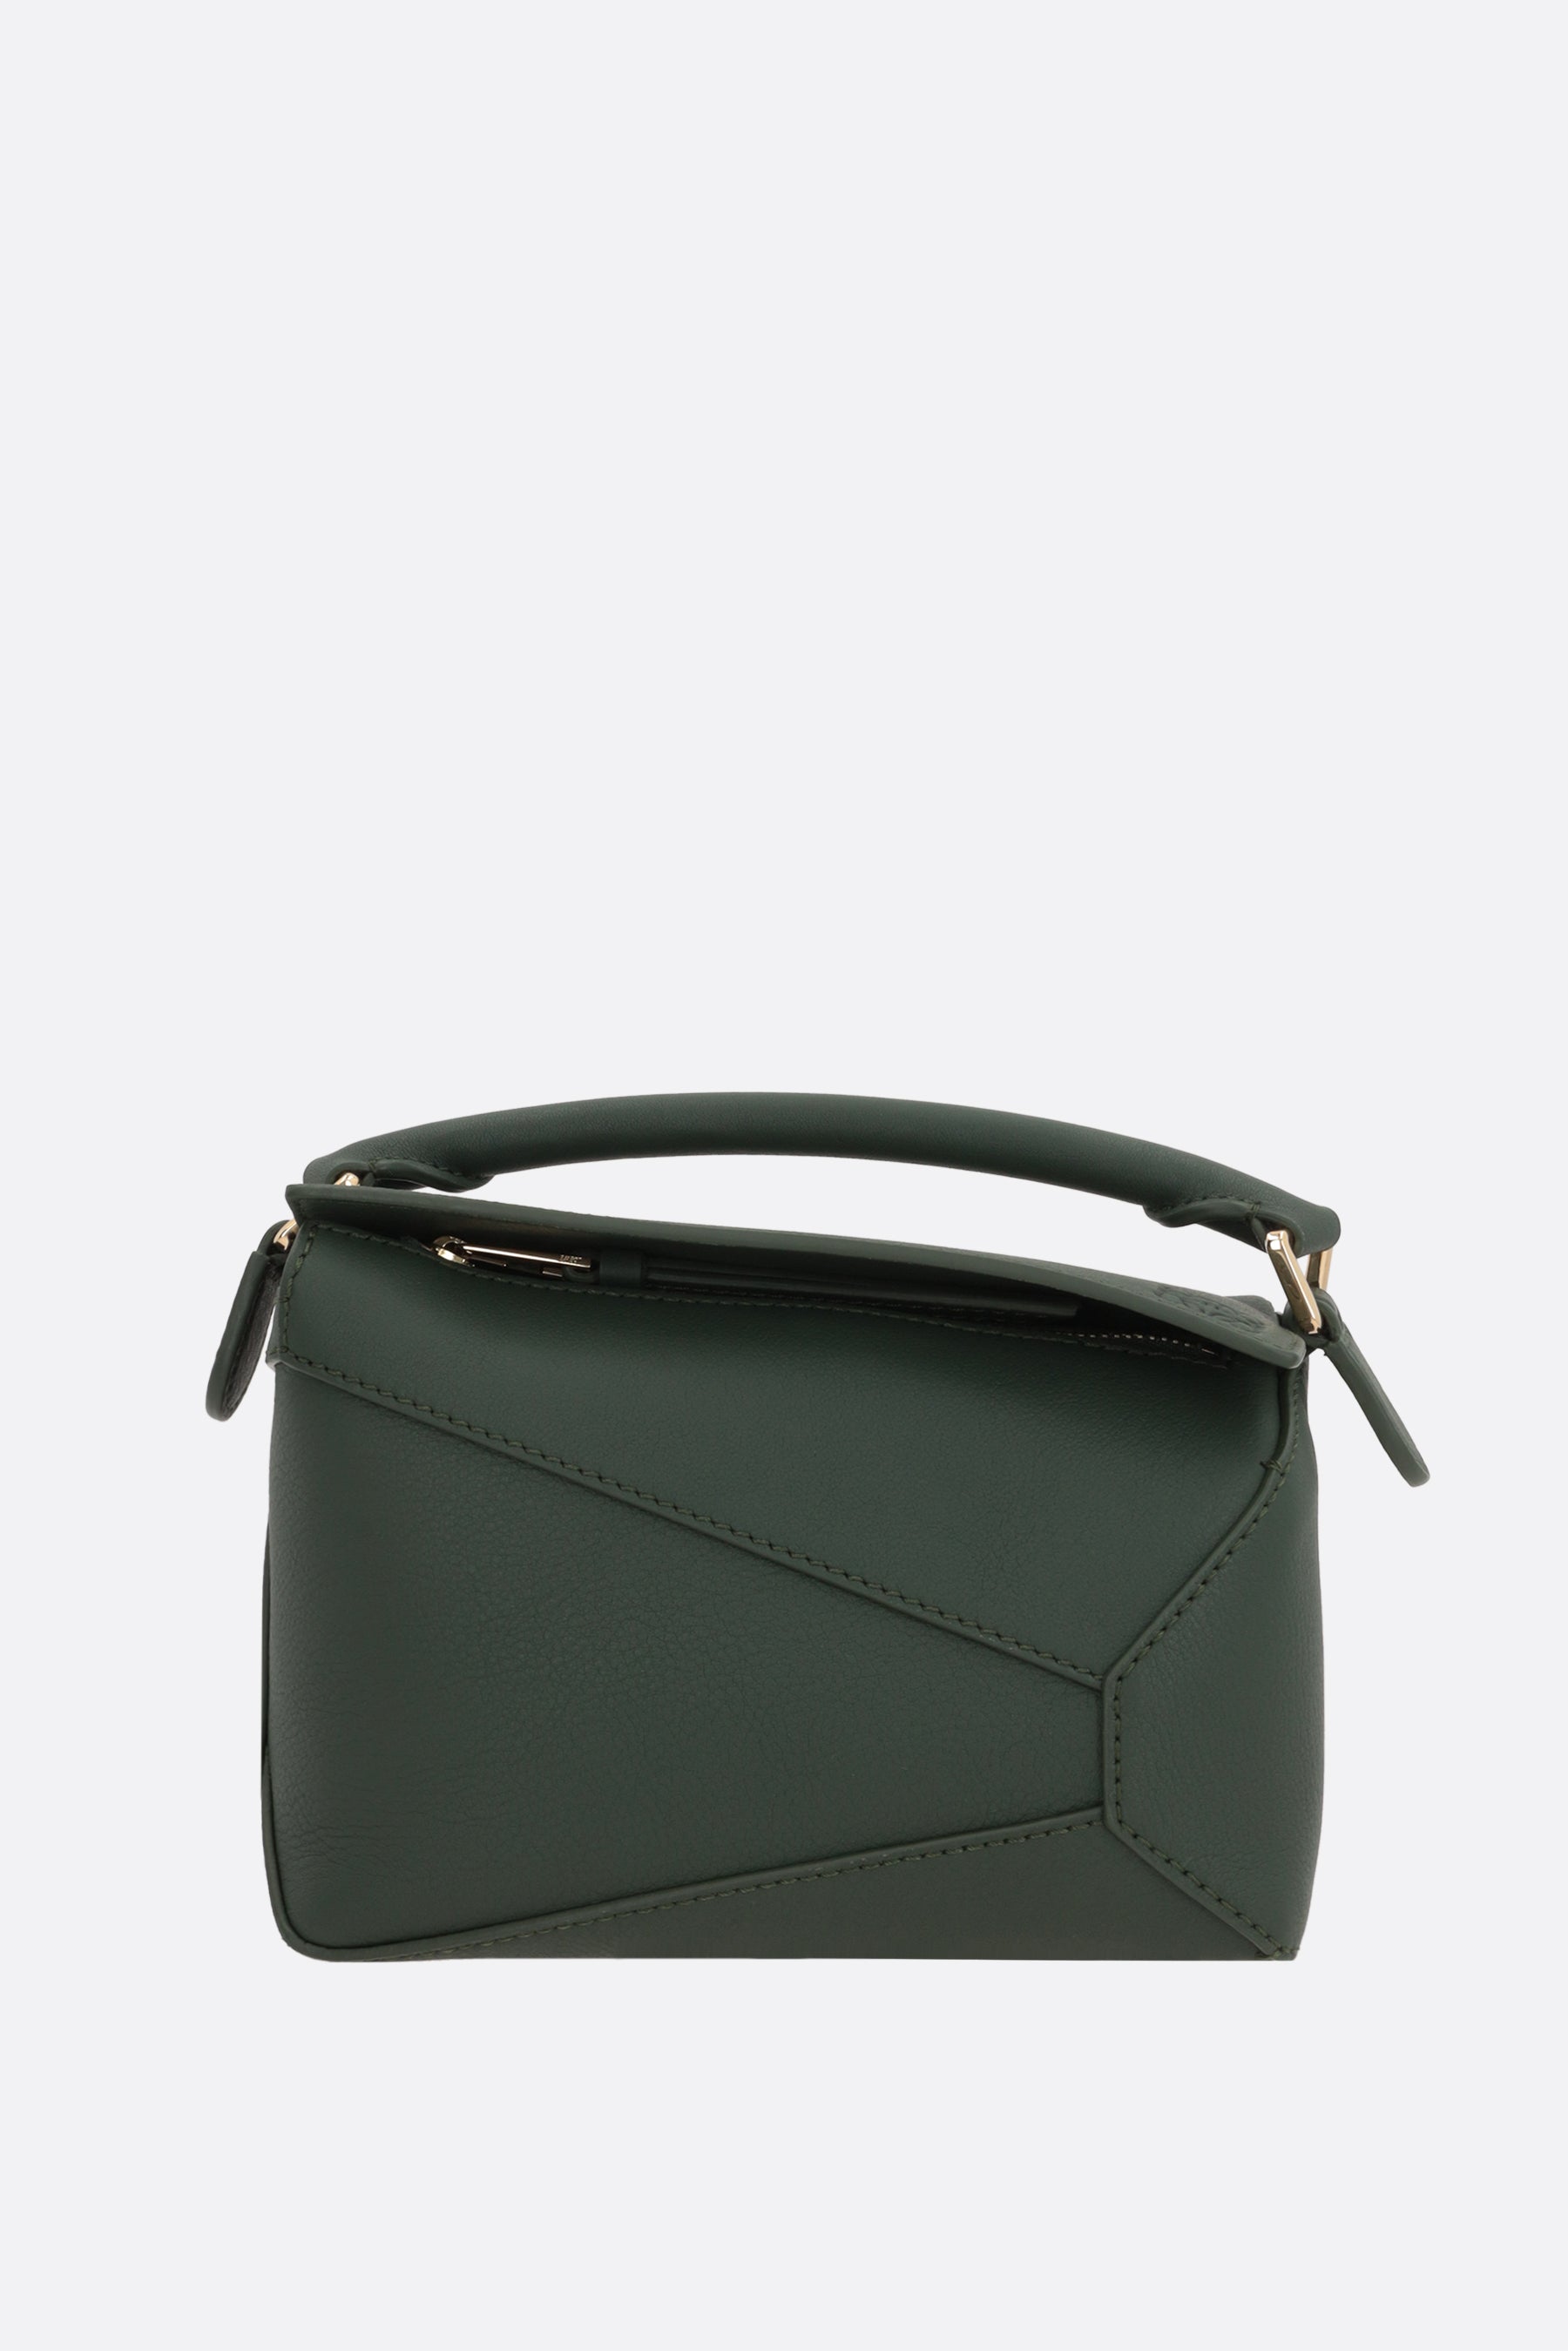 Puzzle mini handbag in Classic leather